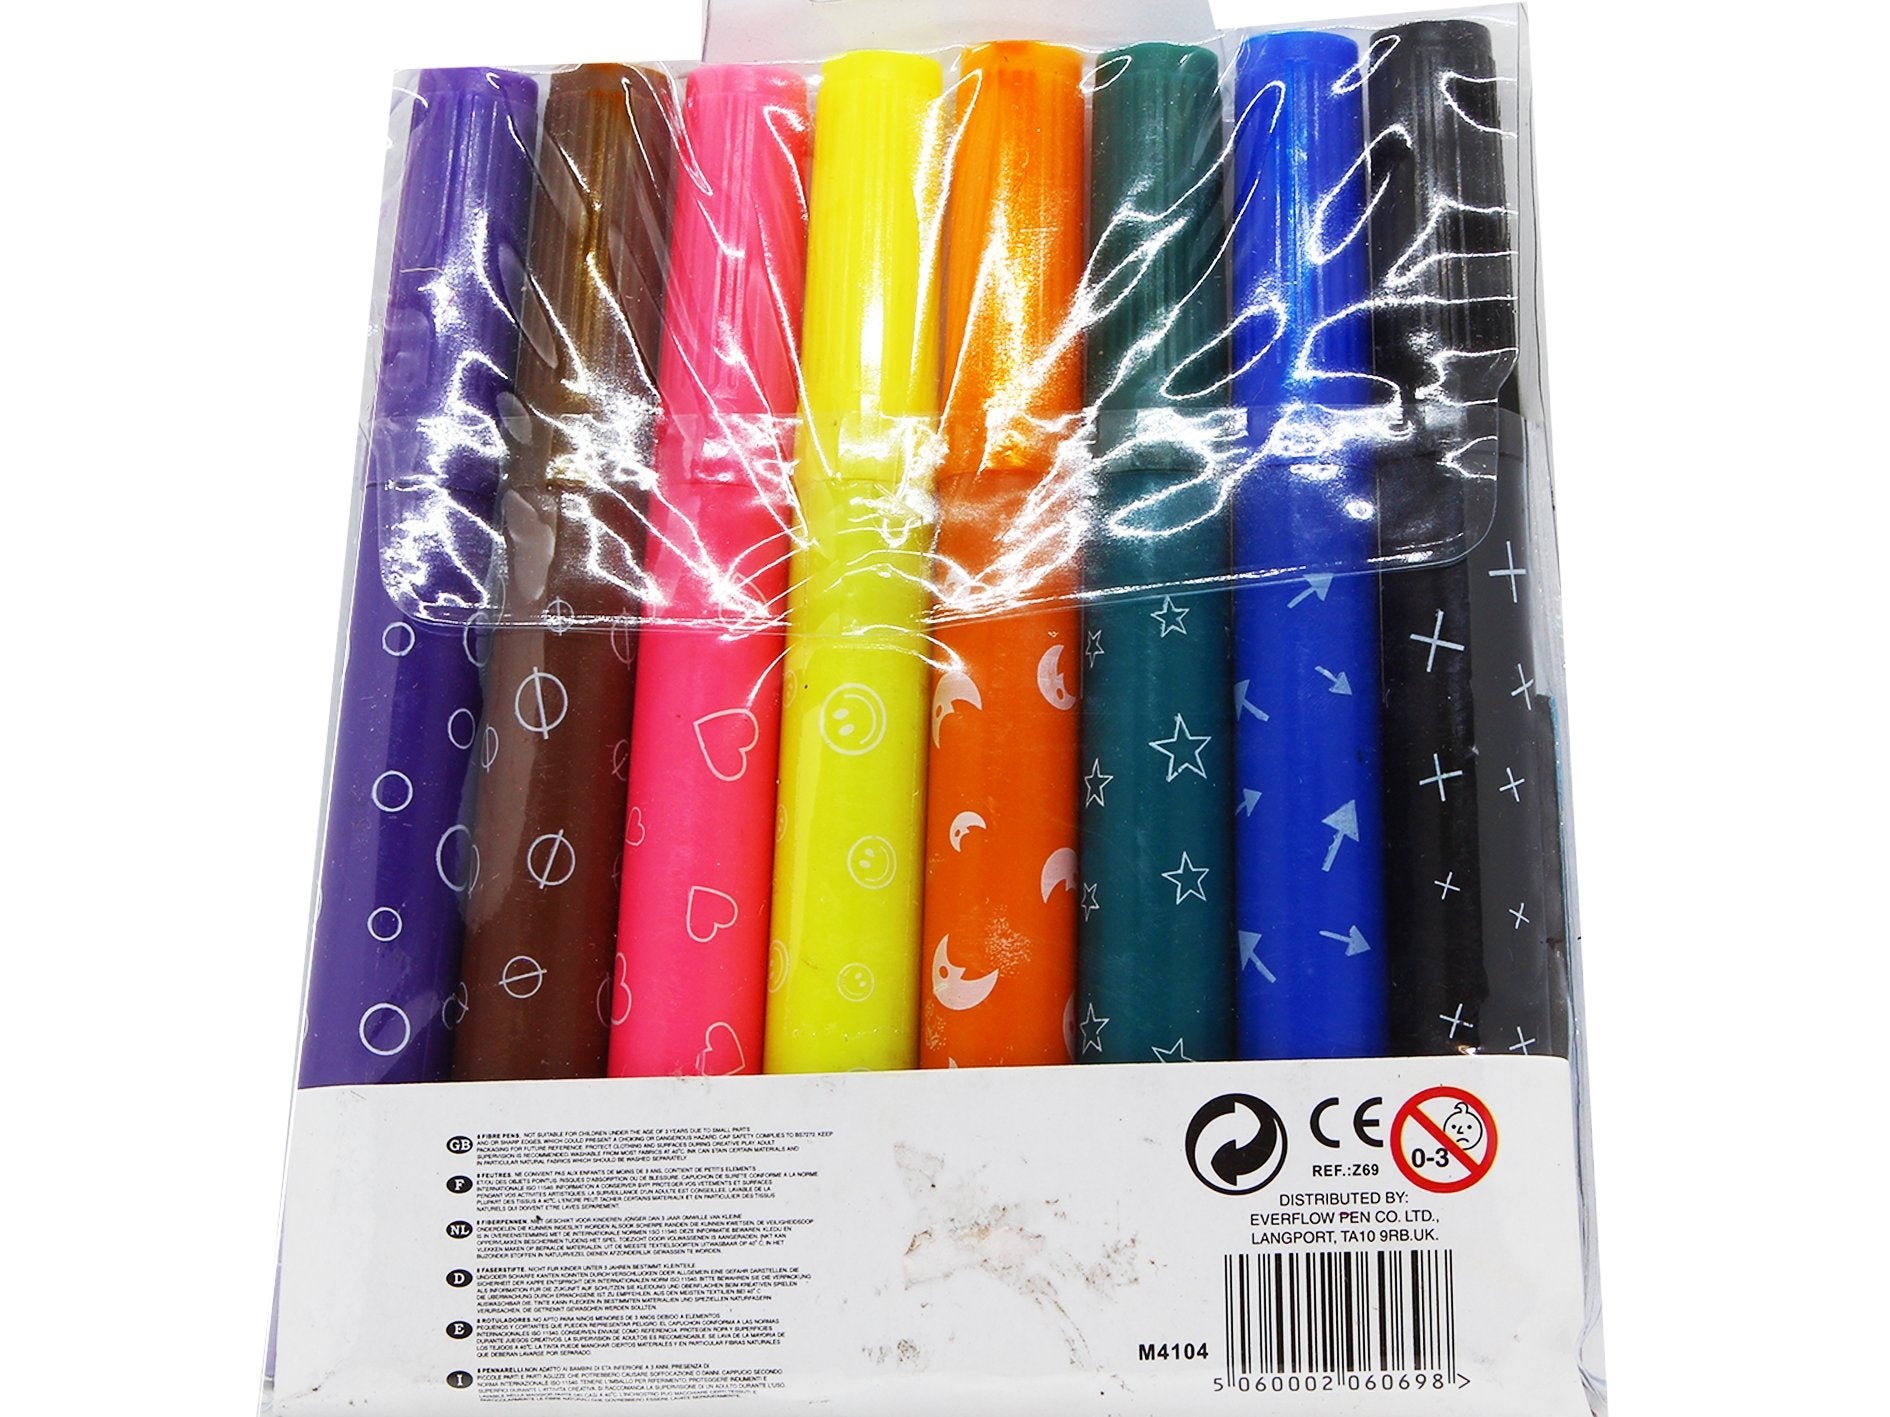 8 Stamper Pens - VIR Wholesale